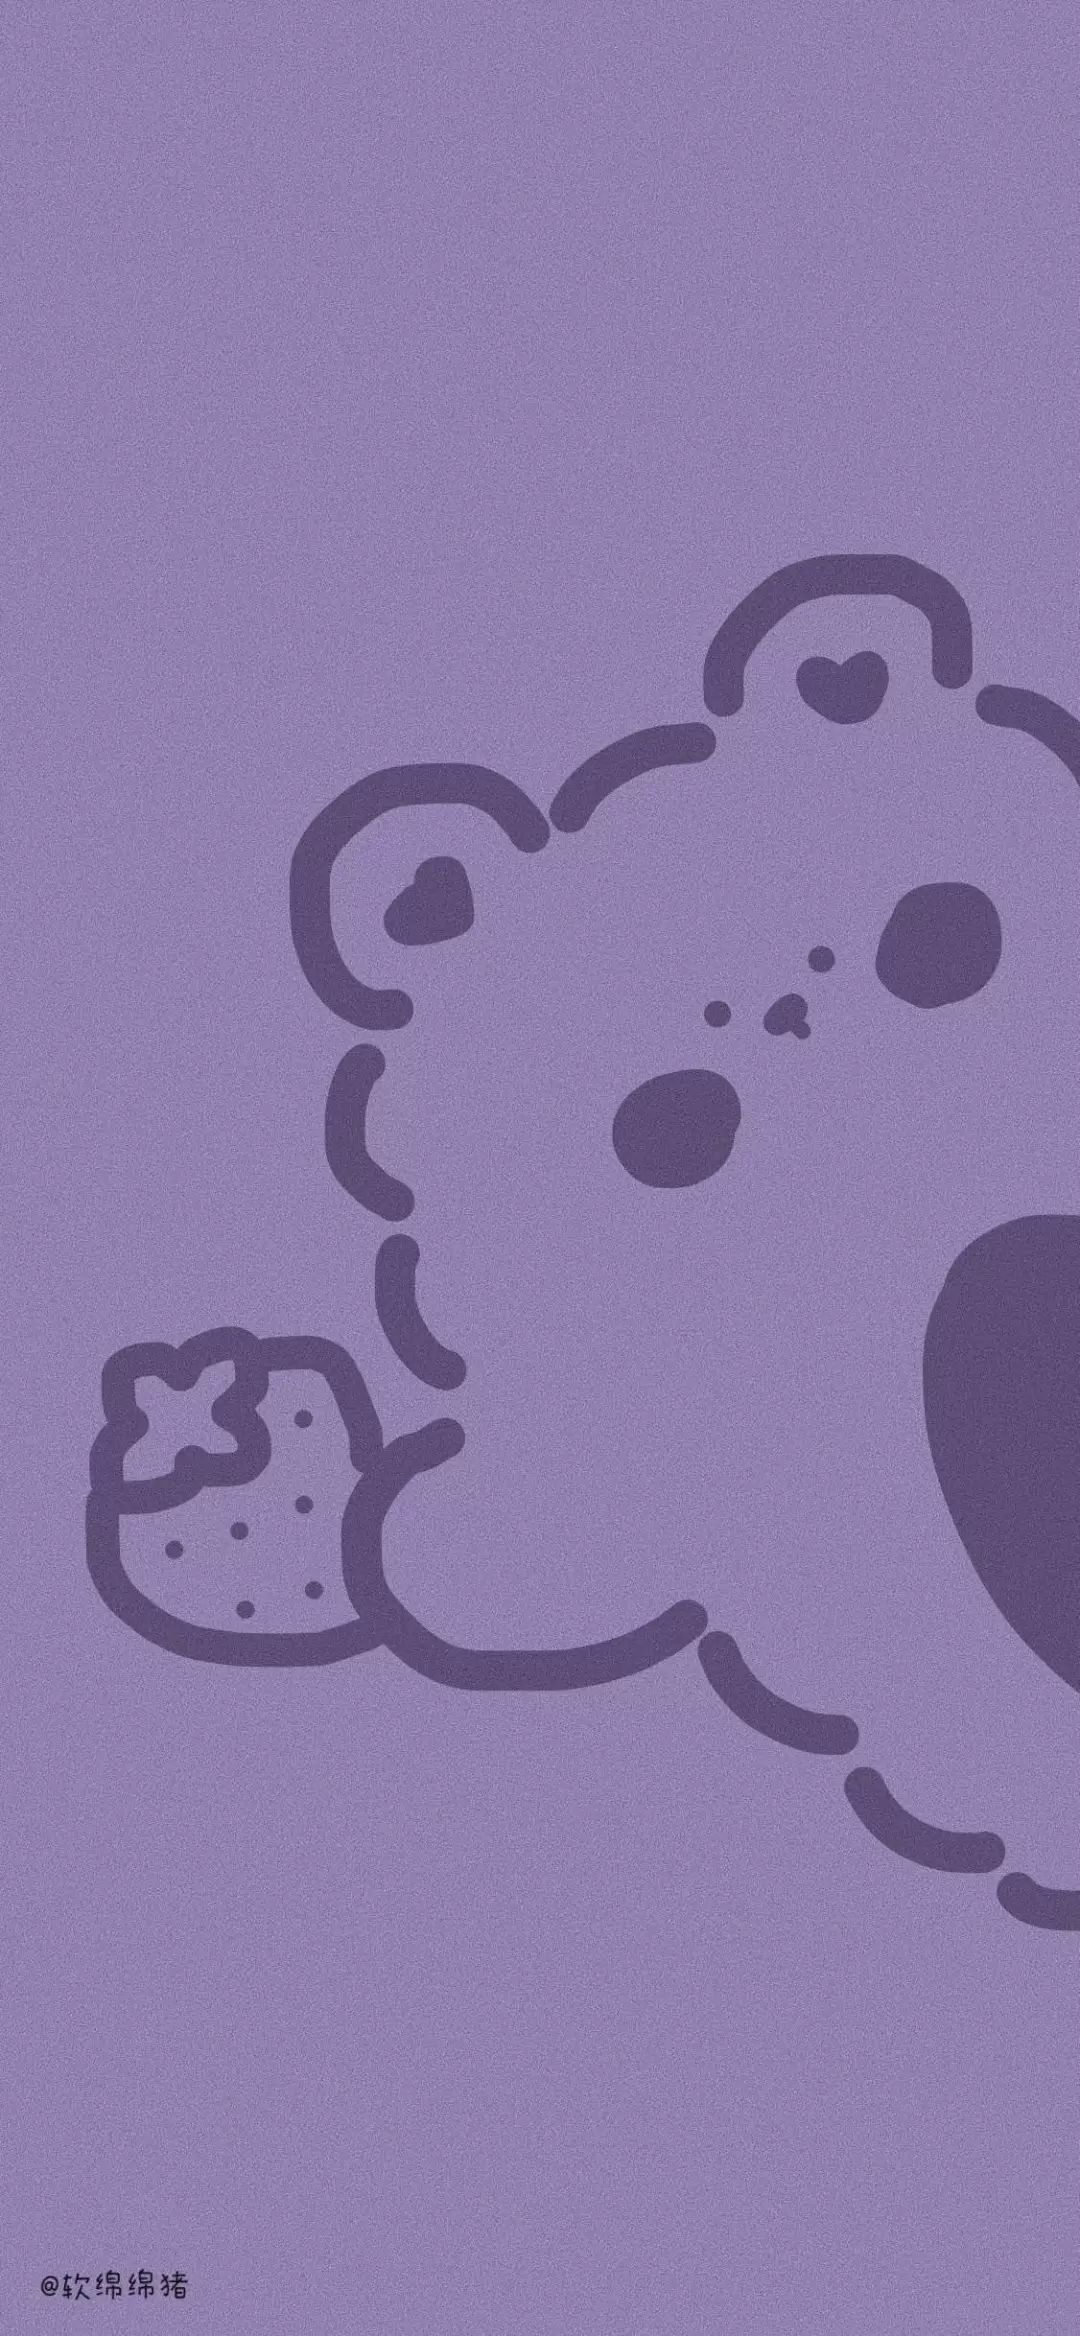 紫色可爱小熊壁纸 动漫卡通手机壁纸 我要个性网